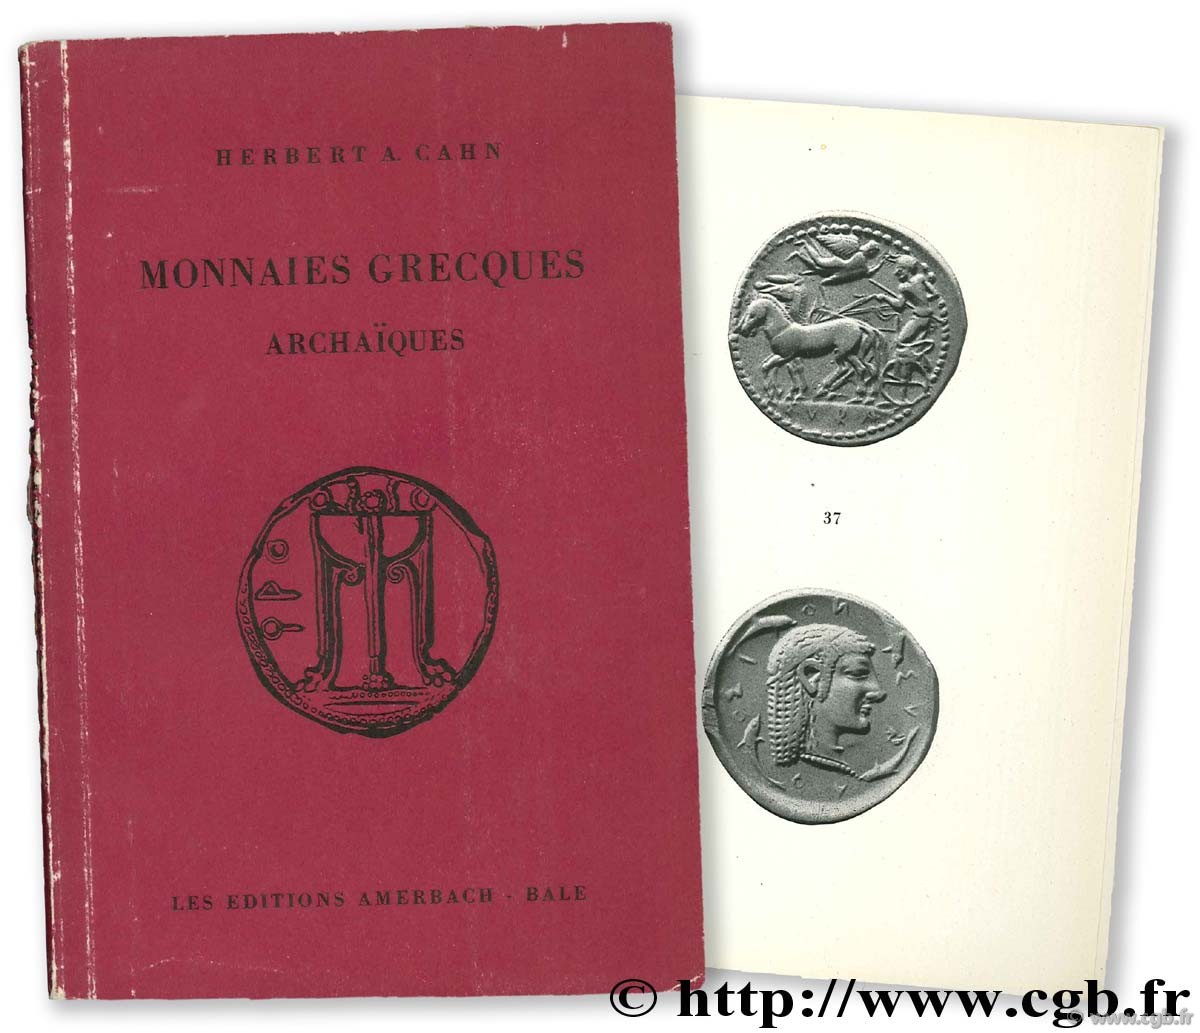 Monnaies grecques archaïques CAHN H.